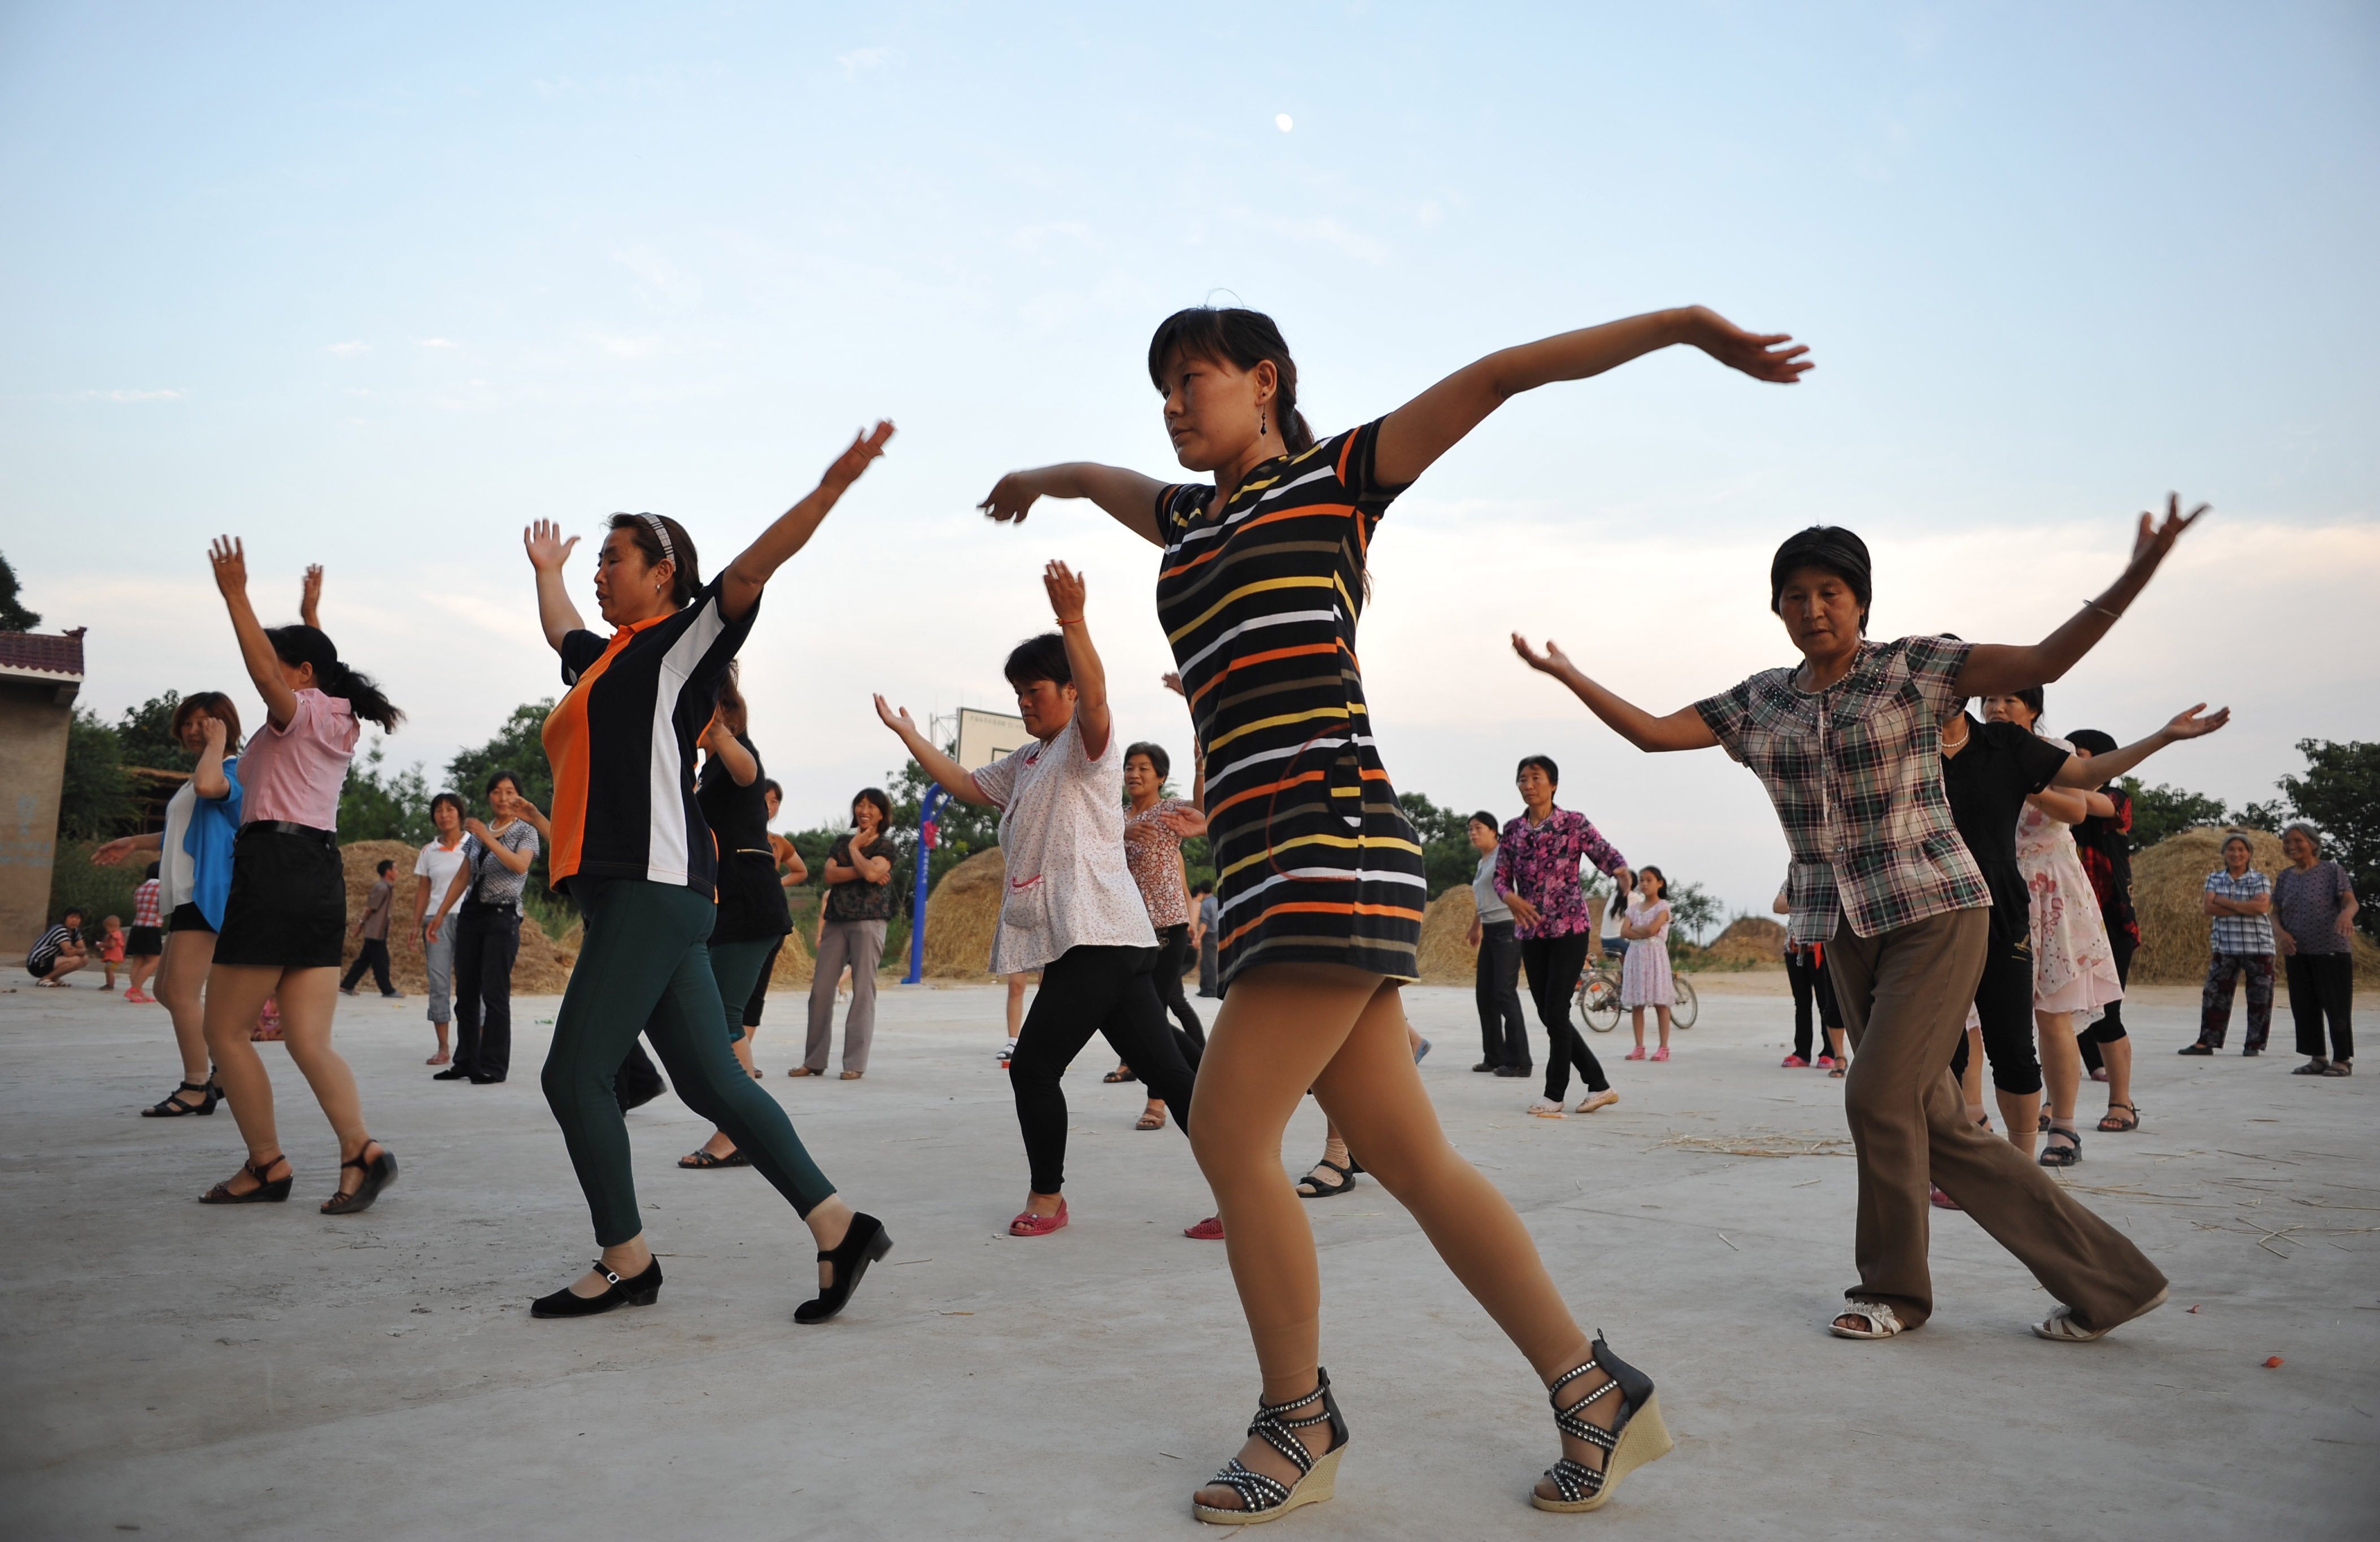 Песни танцы на улице. Китайские танцы на улице. Танцы на улице в Китае. Танцы китайцев на улицах. Китайцы танцуют на улице.